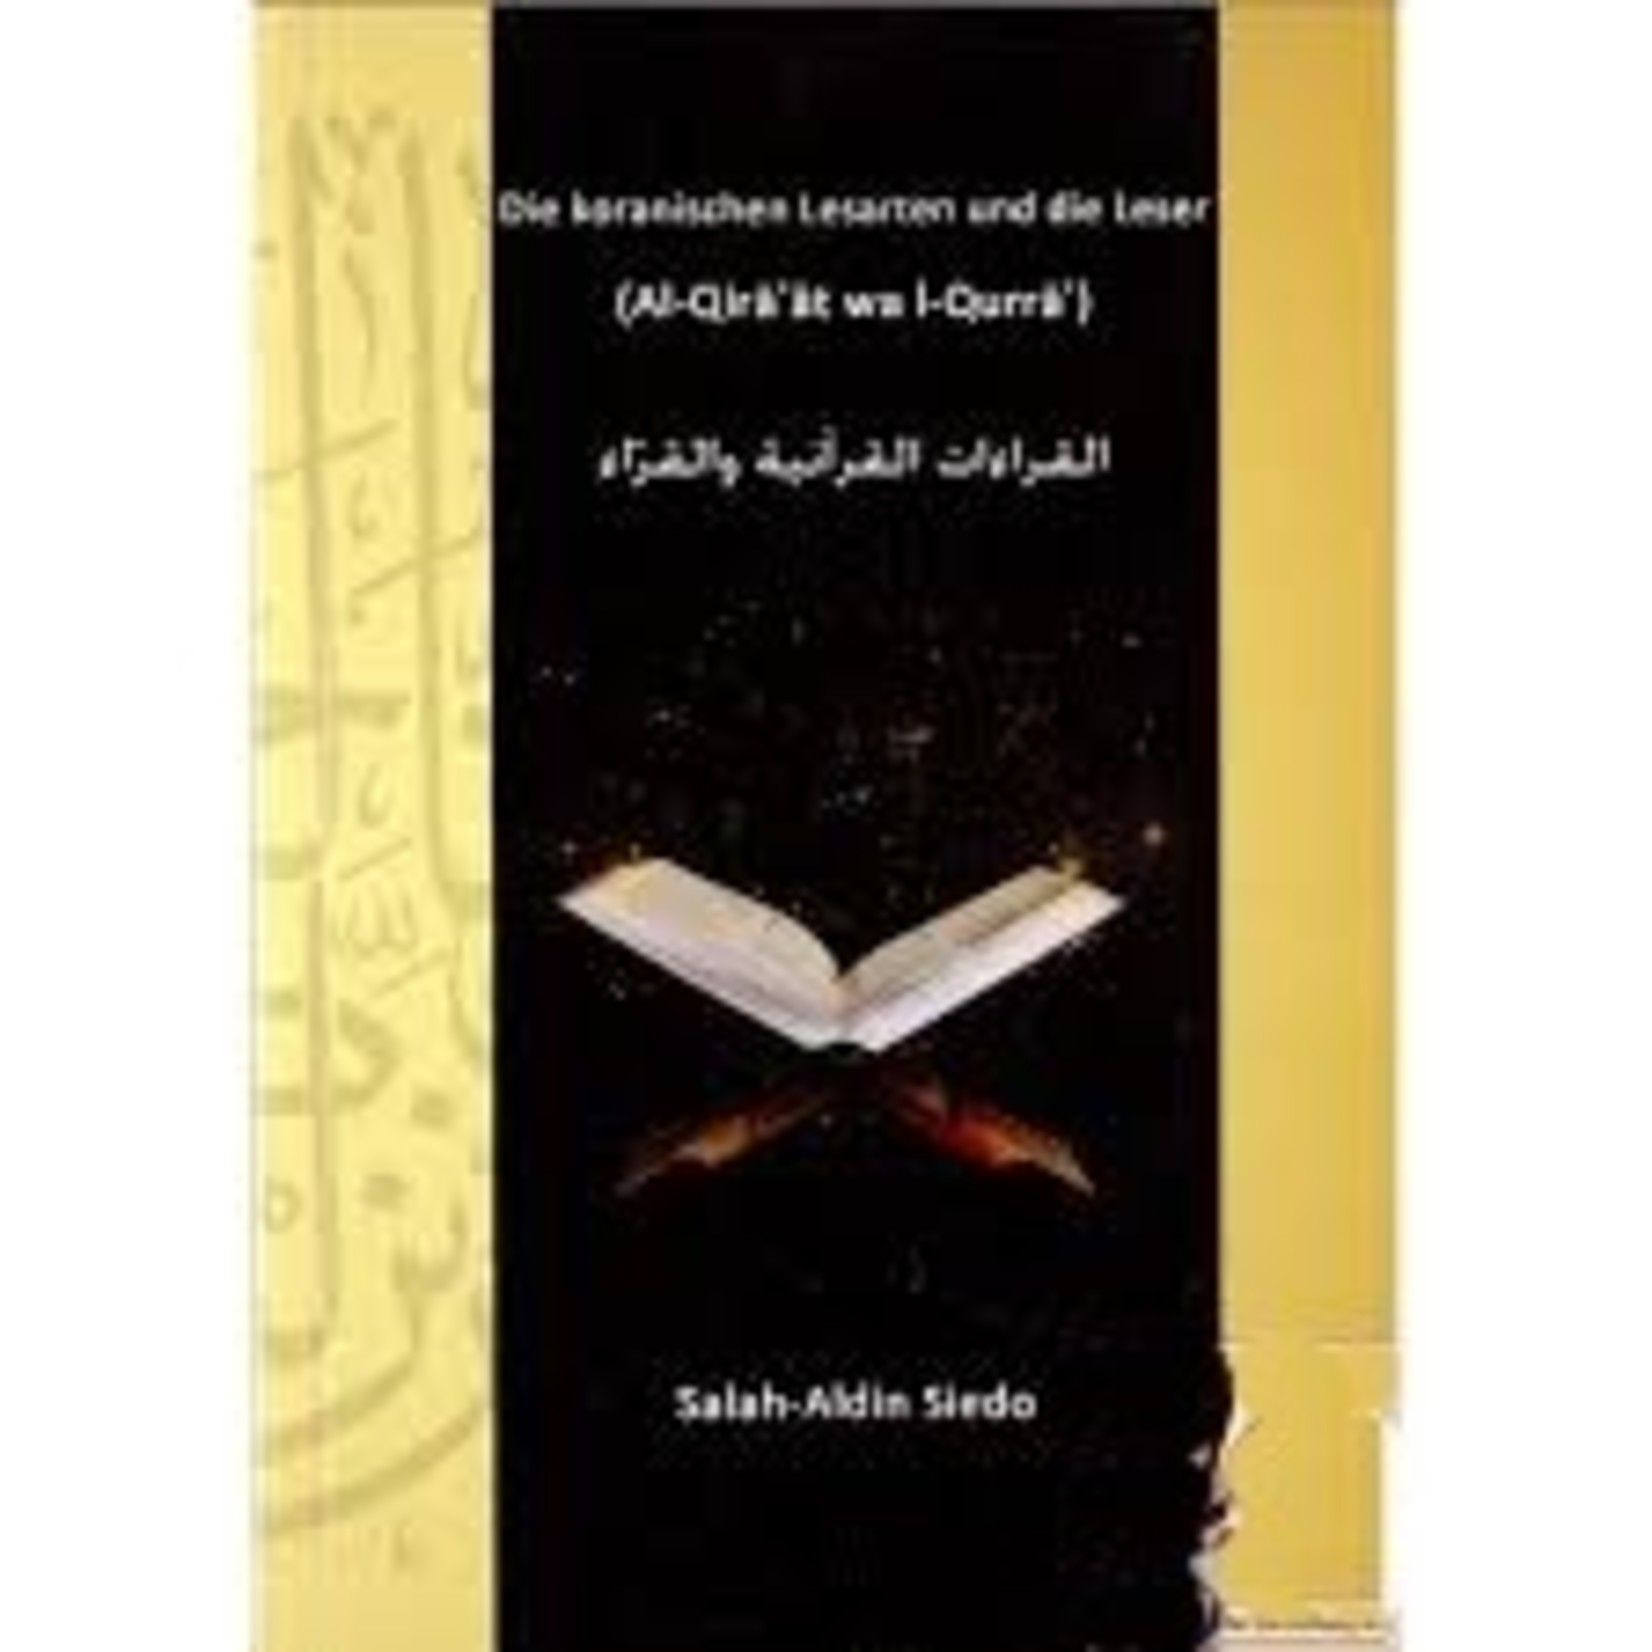 Die koranischen Lesearten und die Leser (al-Qira`at wa l-Qurra`)